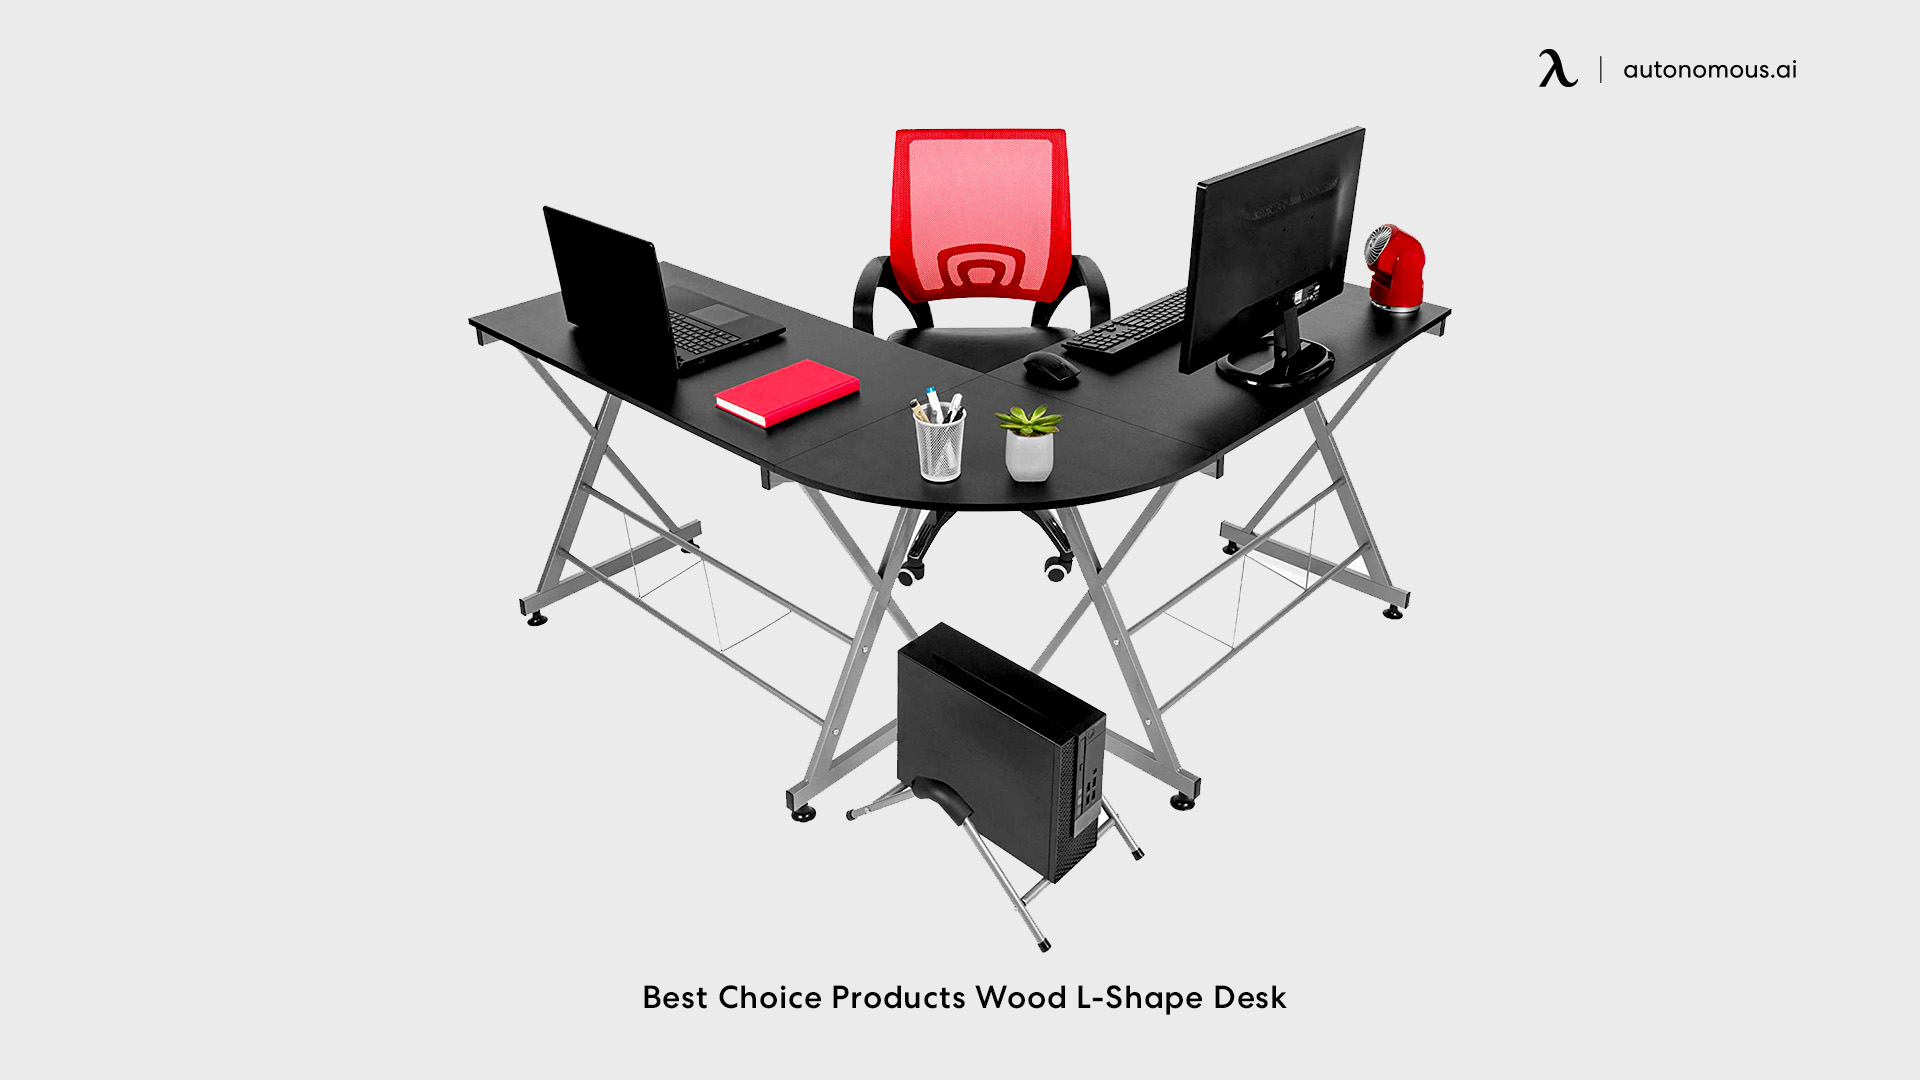 Best Choice Products Wood L-Shape Desk